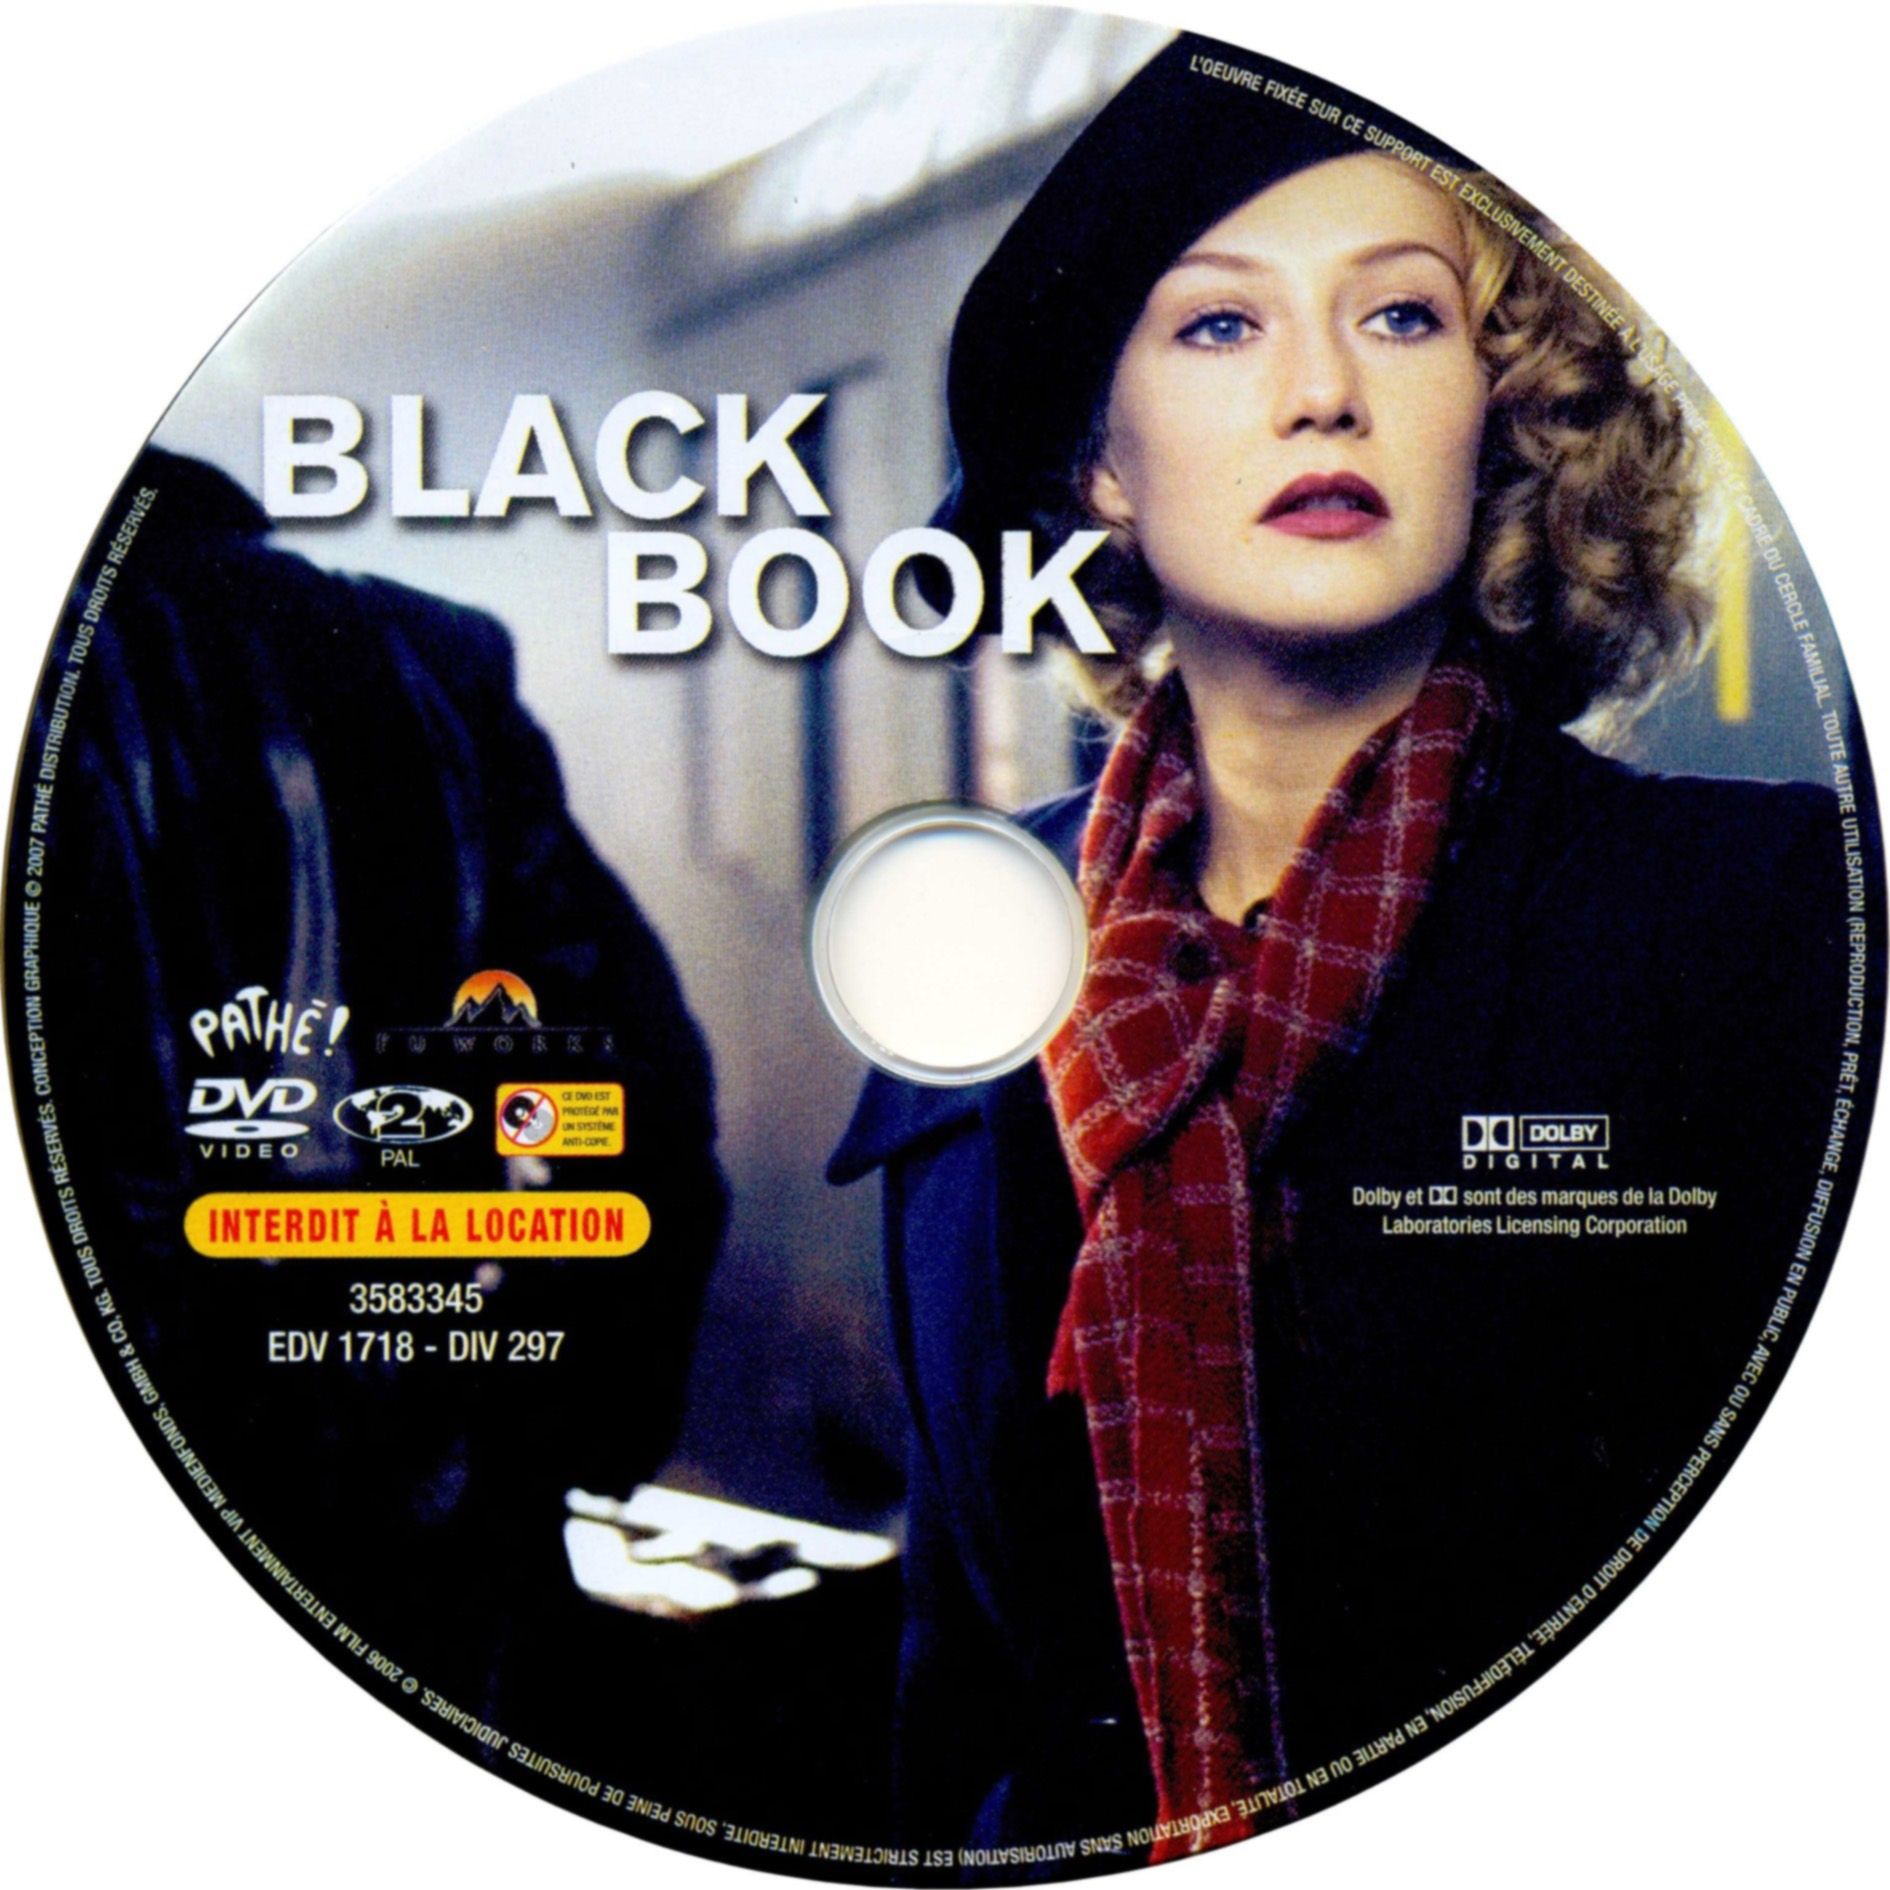 Black book v2